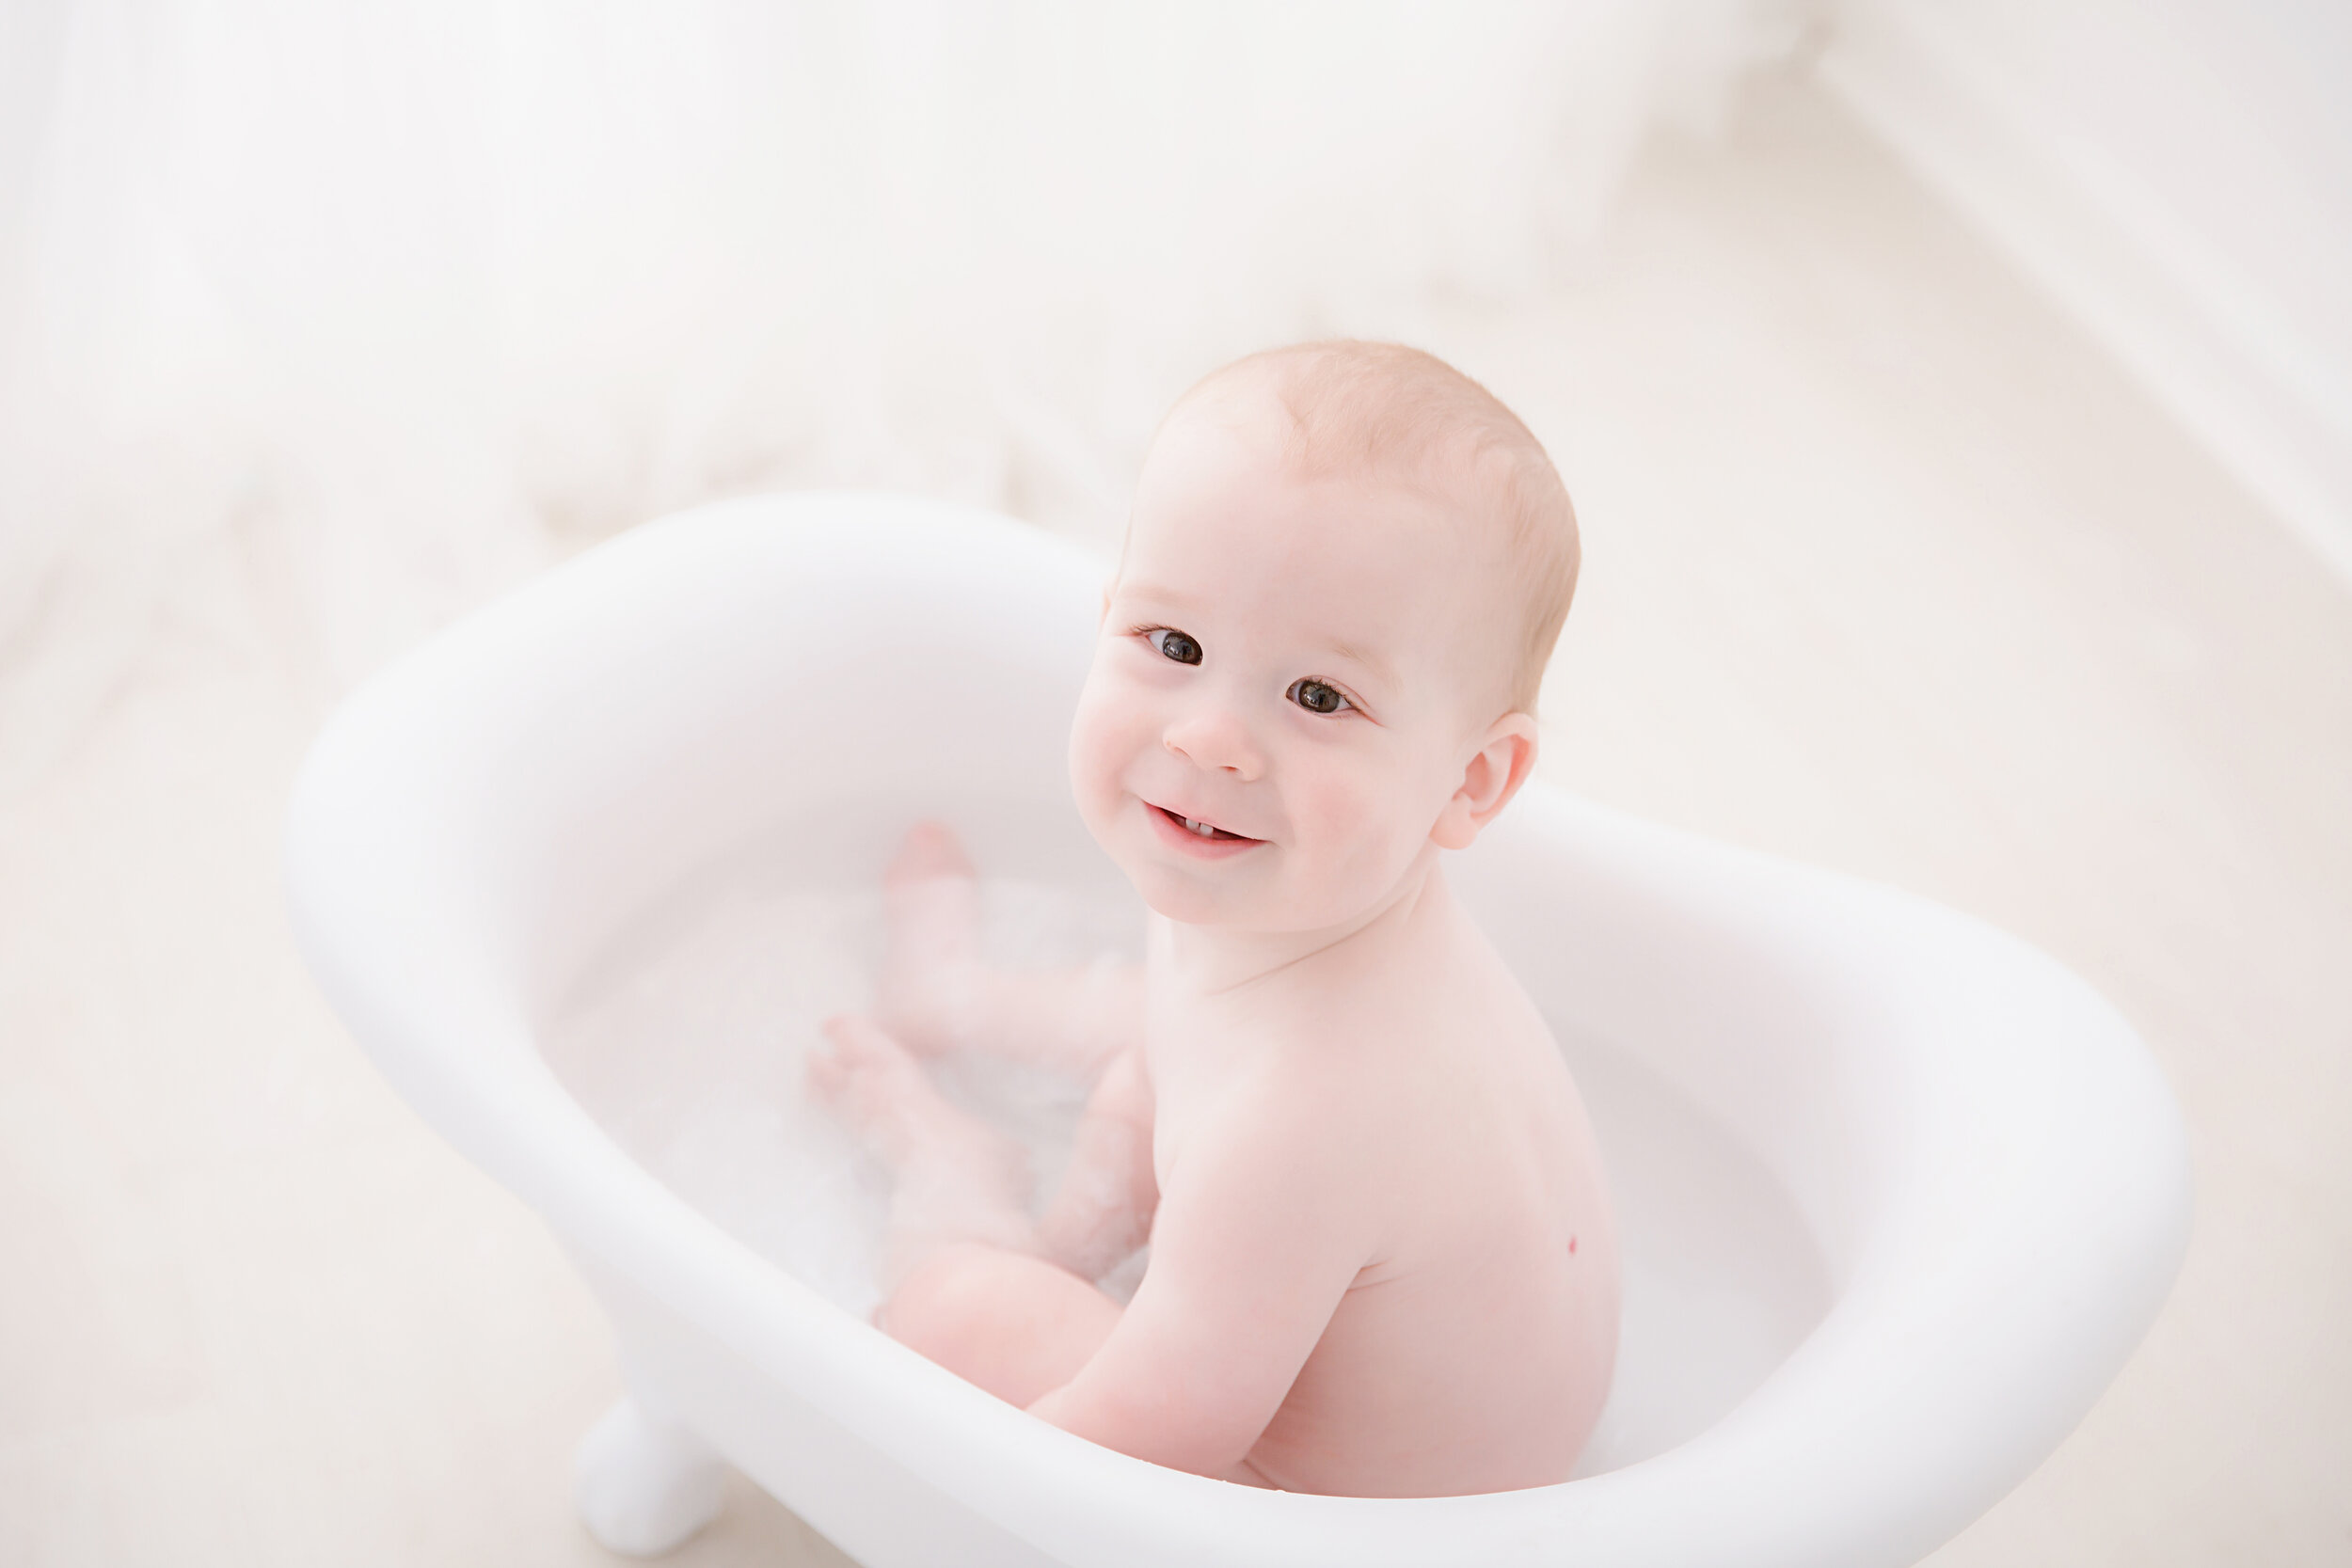 baby-boy-sitting-in-tub